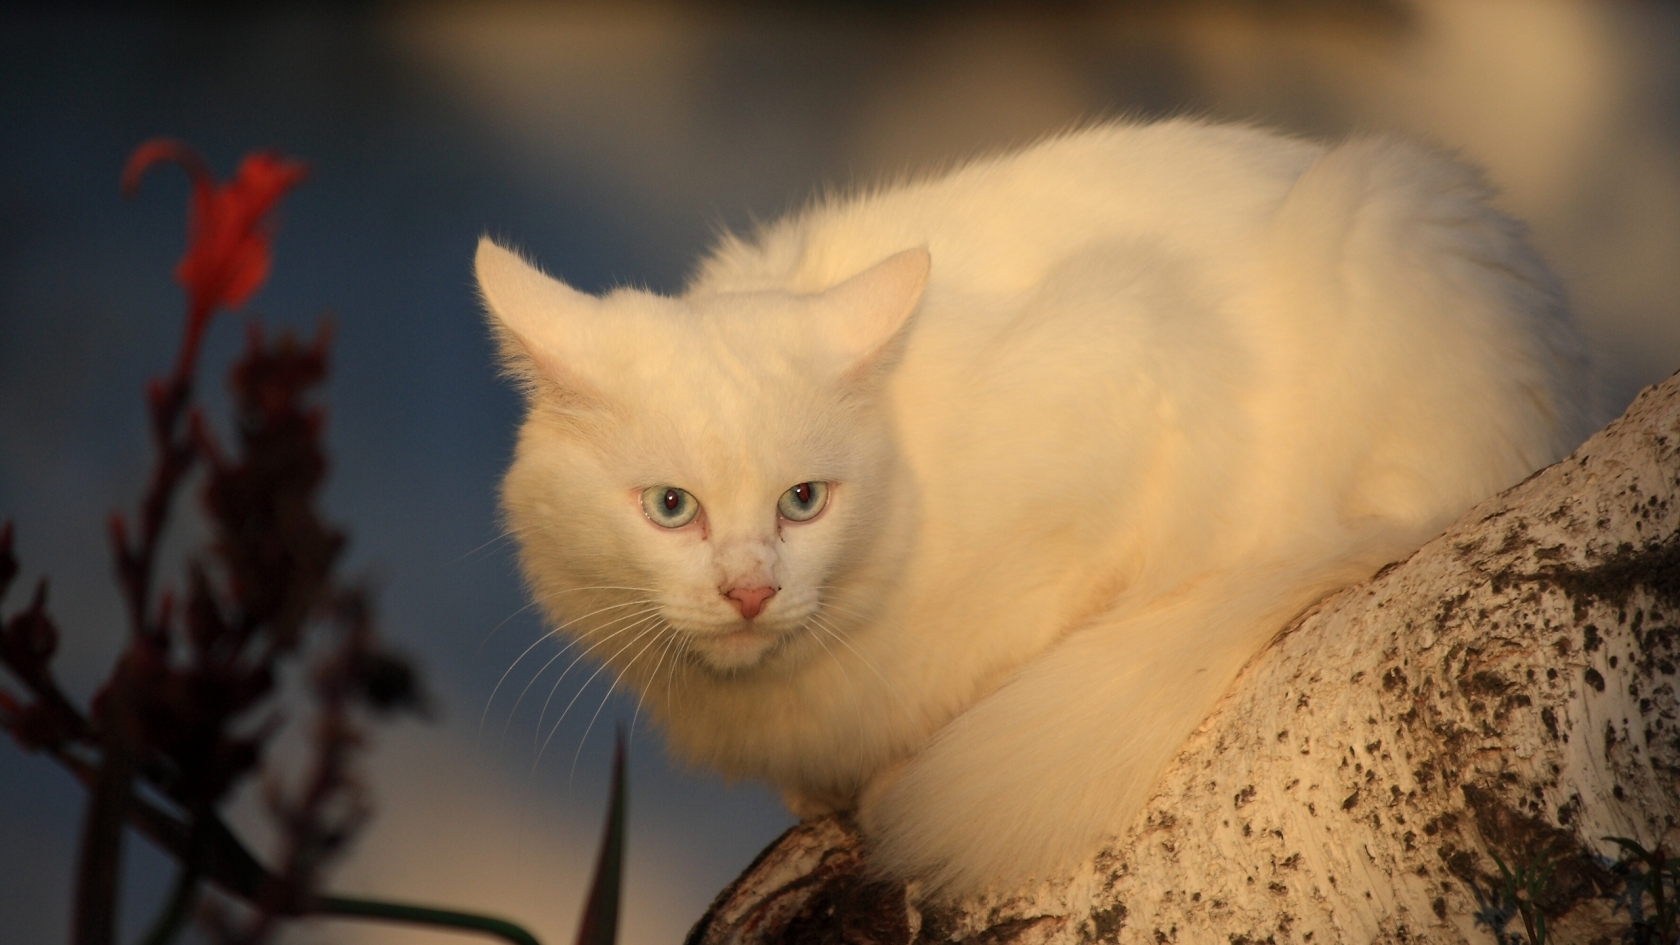 White Cat for 1680 x 945 HDTV resolution